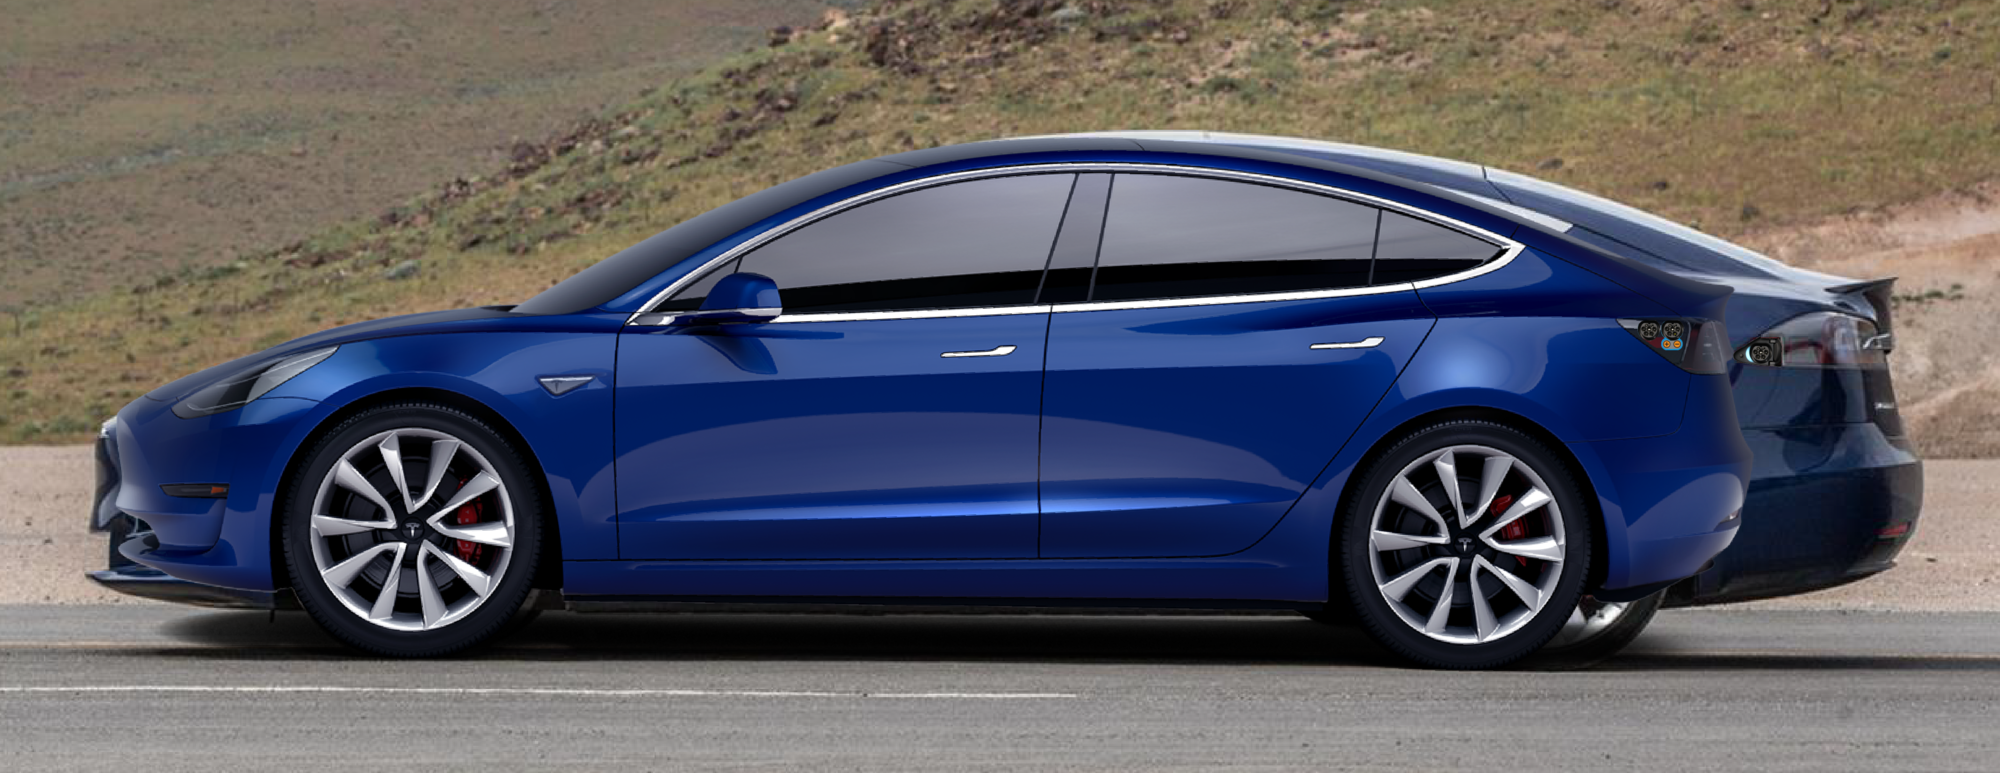 2016-Tesla-Model-S-P90D-side.png